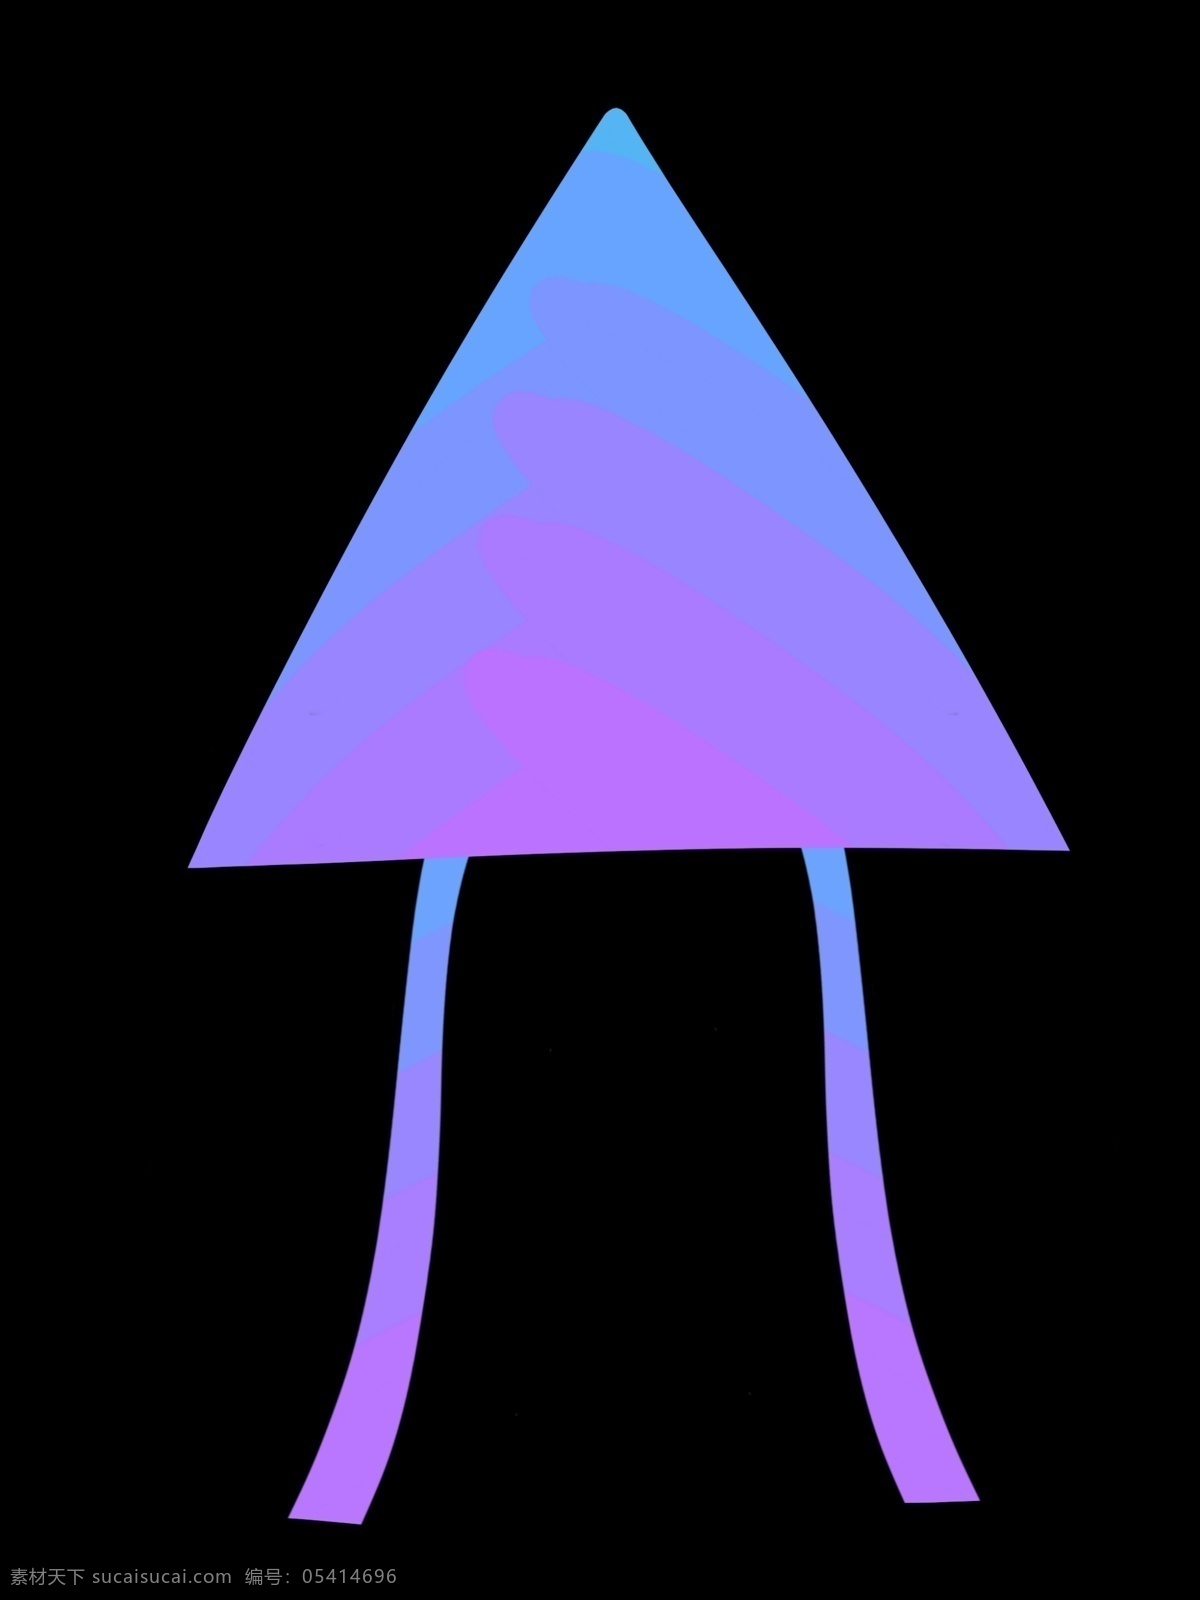 蓝色 三角形 风筝 插画 蓝色风筝 卡通风筝插画 蓝色的风筝 紫色的花纹 三角形风筝 创意风筝插画